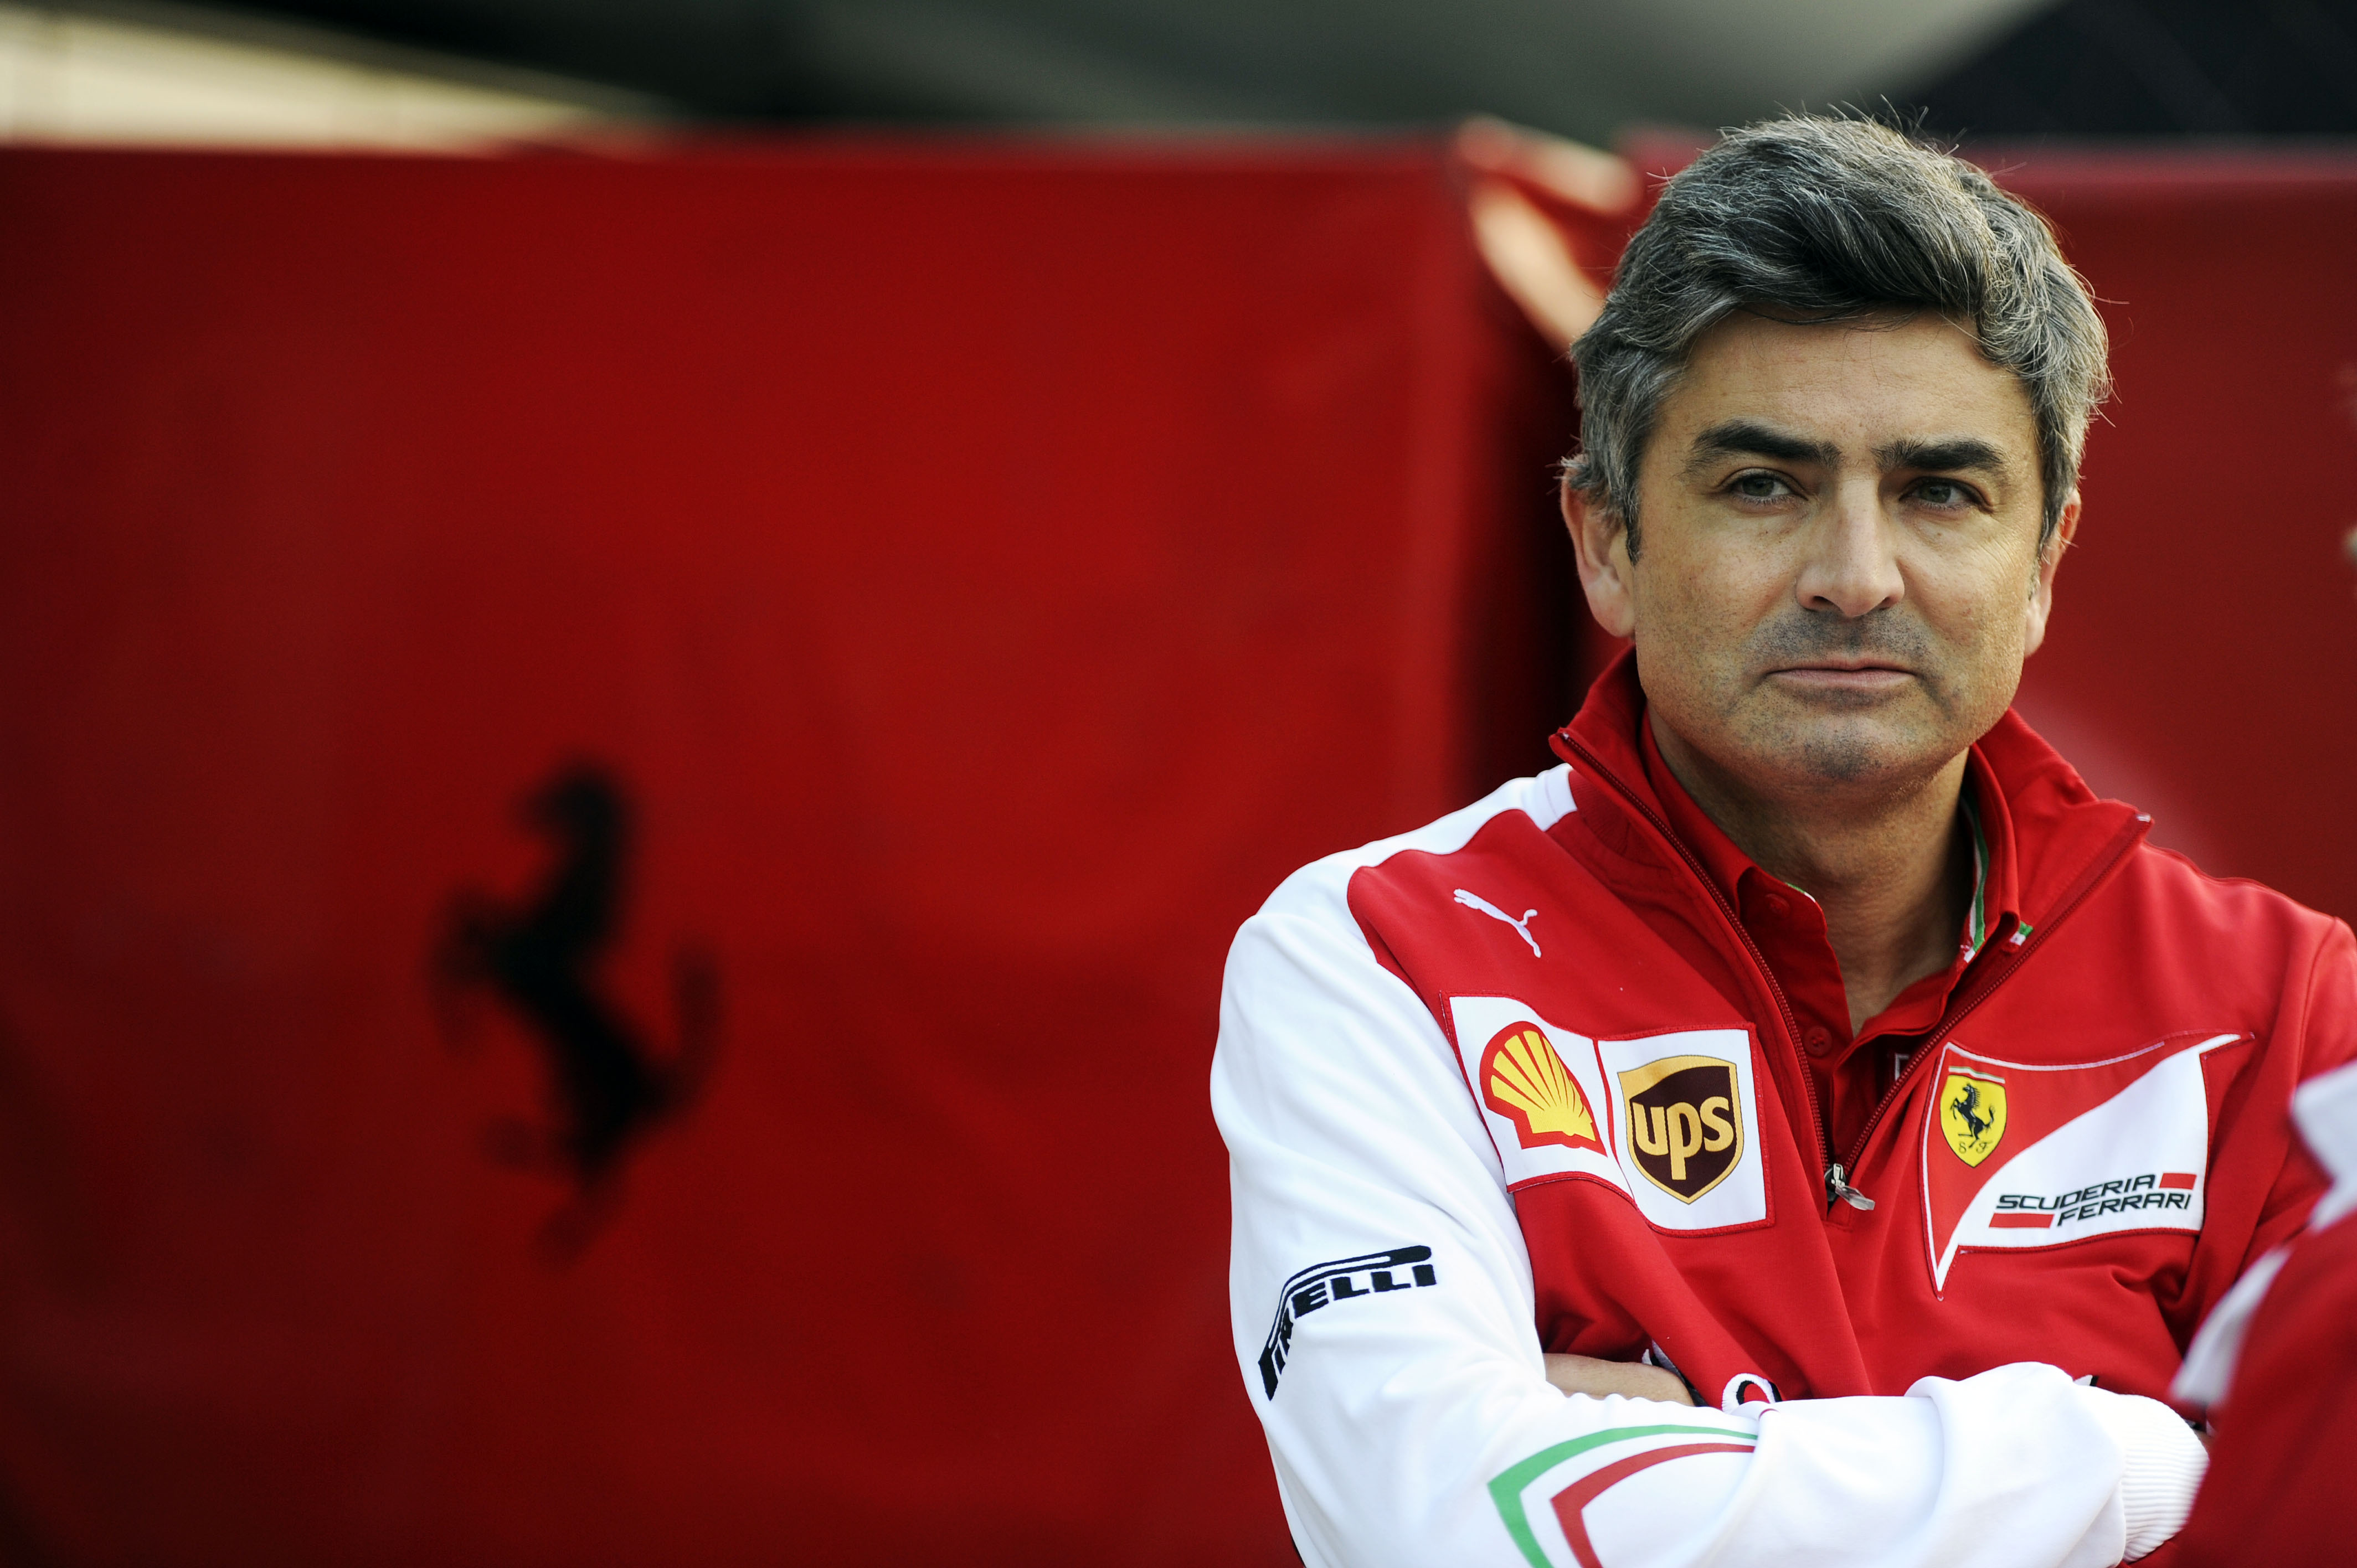 Mattiacci weet wat hij moet veranderen bij Ferrari